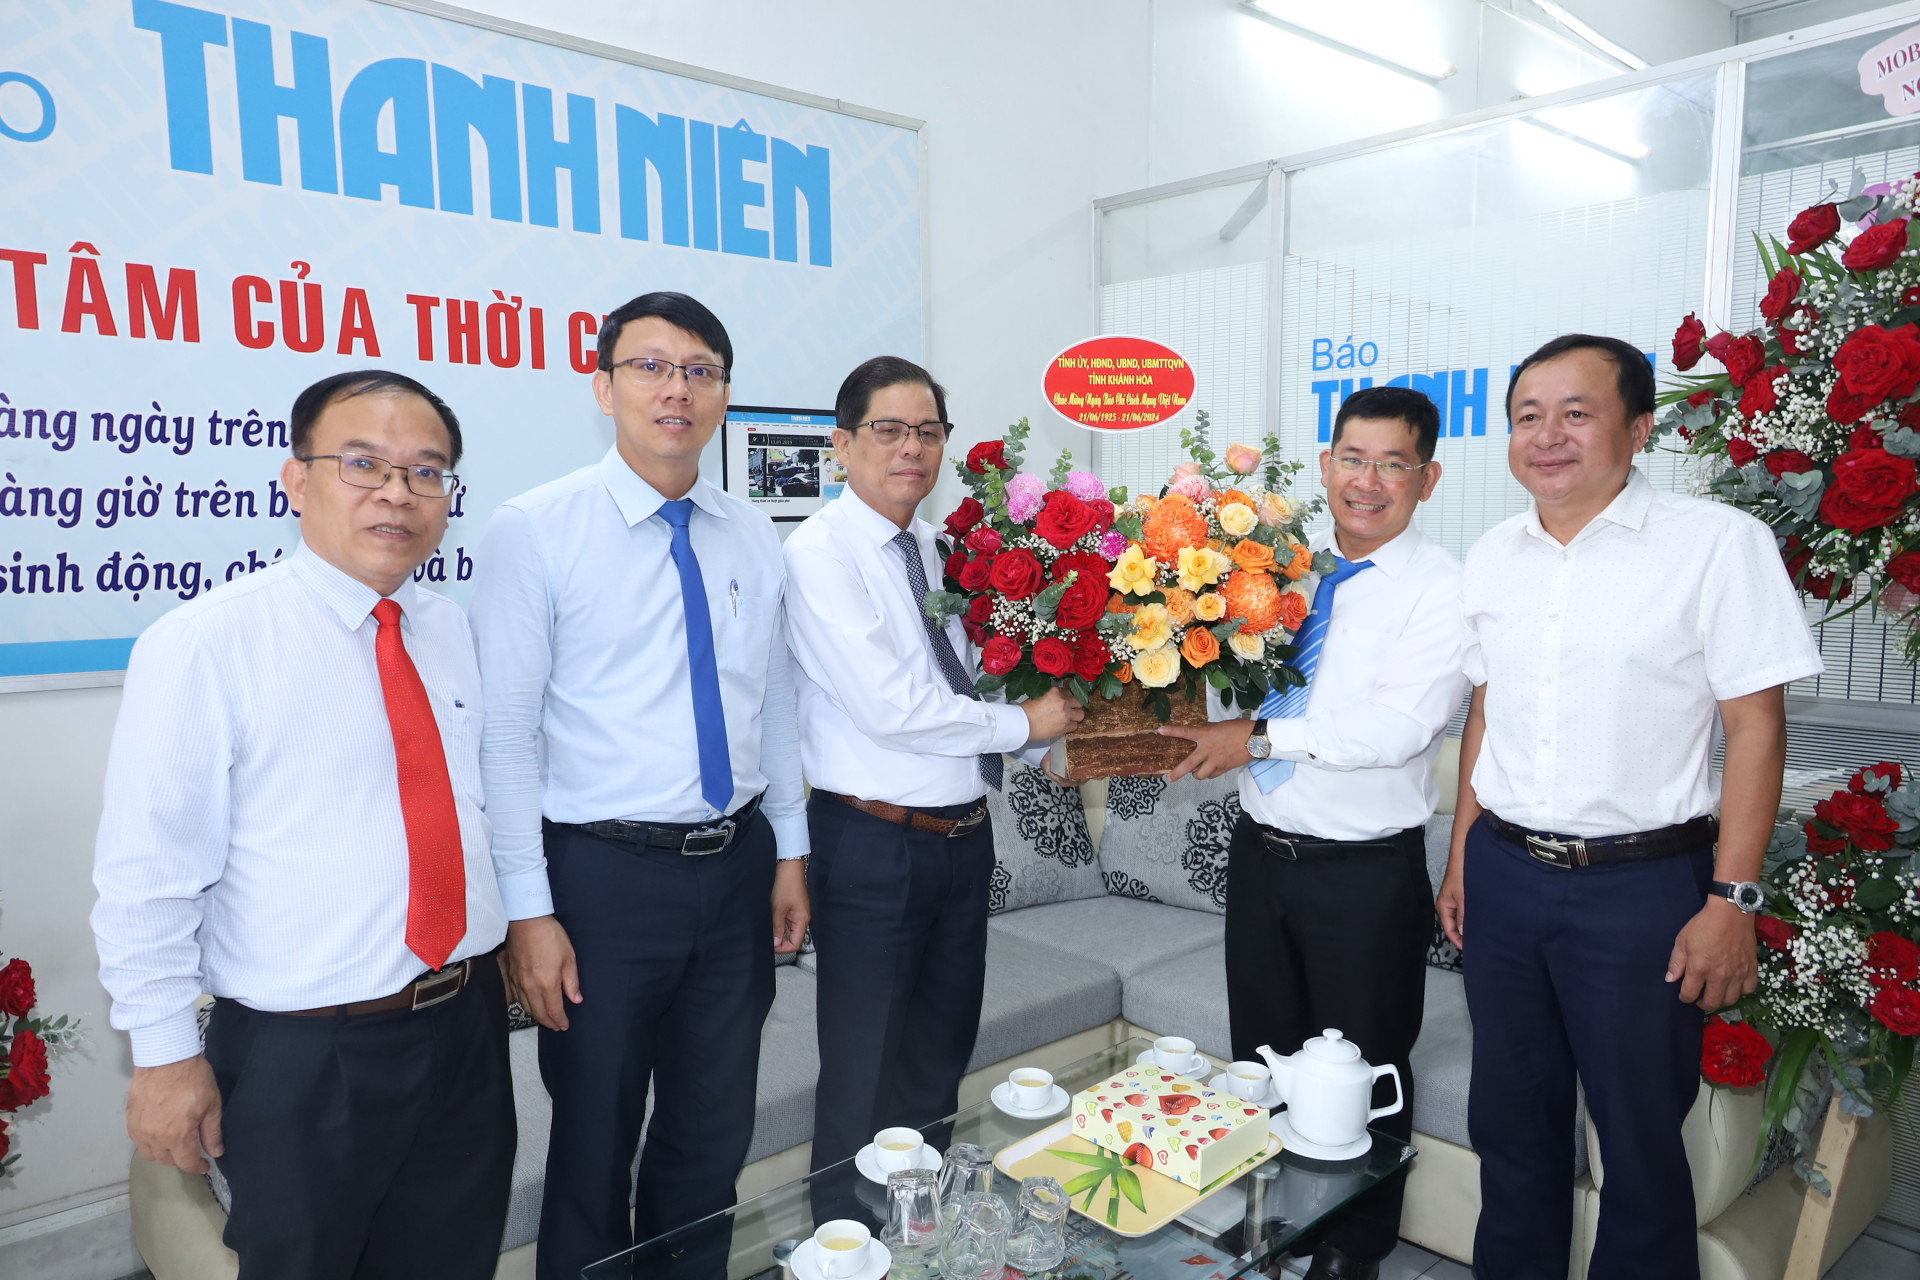 Đồng chí Nguyễn Tấn Tuân tặng hoa chúc mừng tập thể Văn phòng đại diện BáoThanh niên khu vực Nam Trung Bộ - Nam Tây Nguyên.